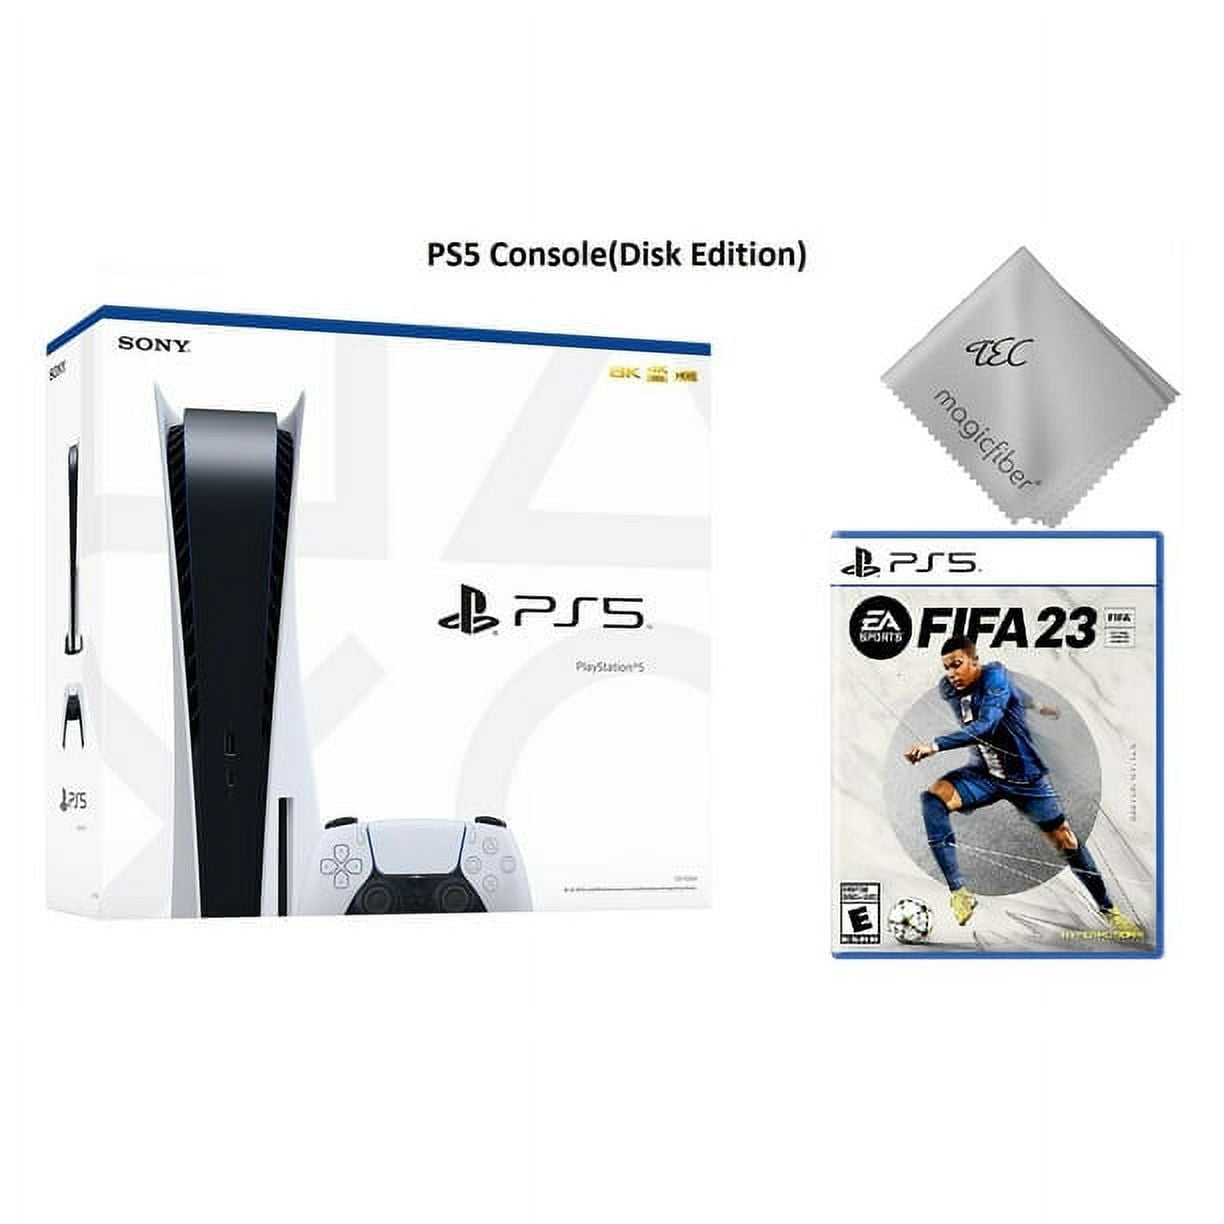 FIFA 23 - PS5 – Cliq